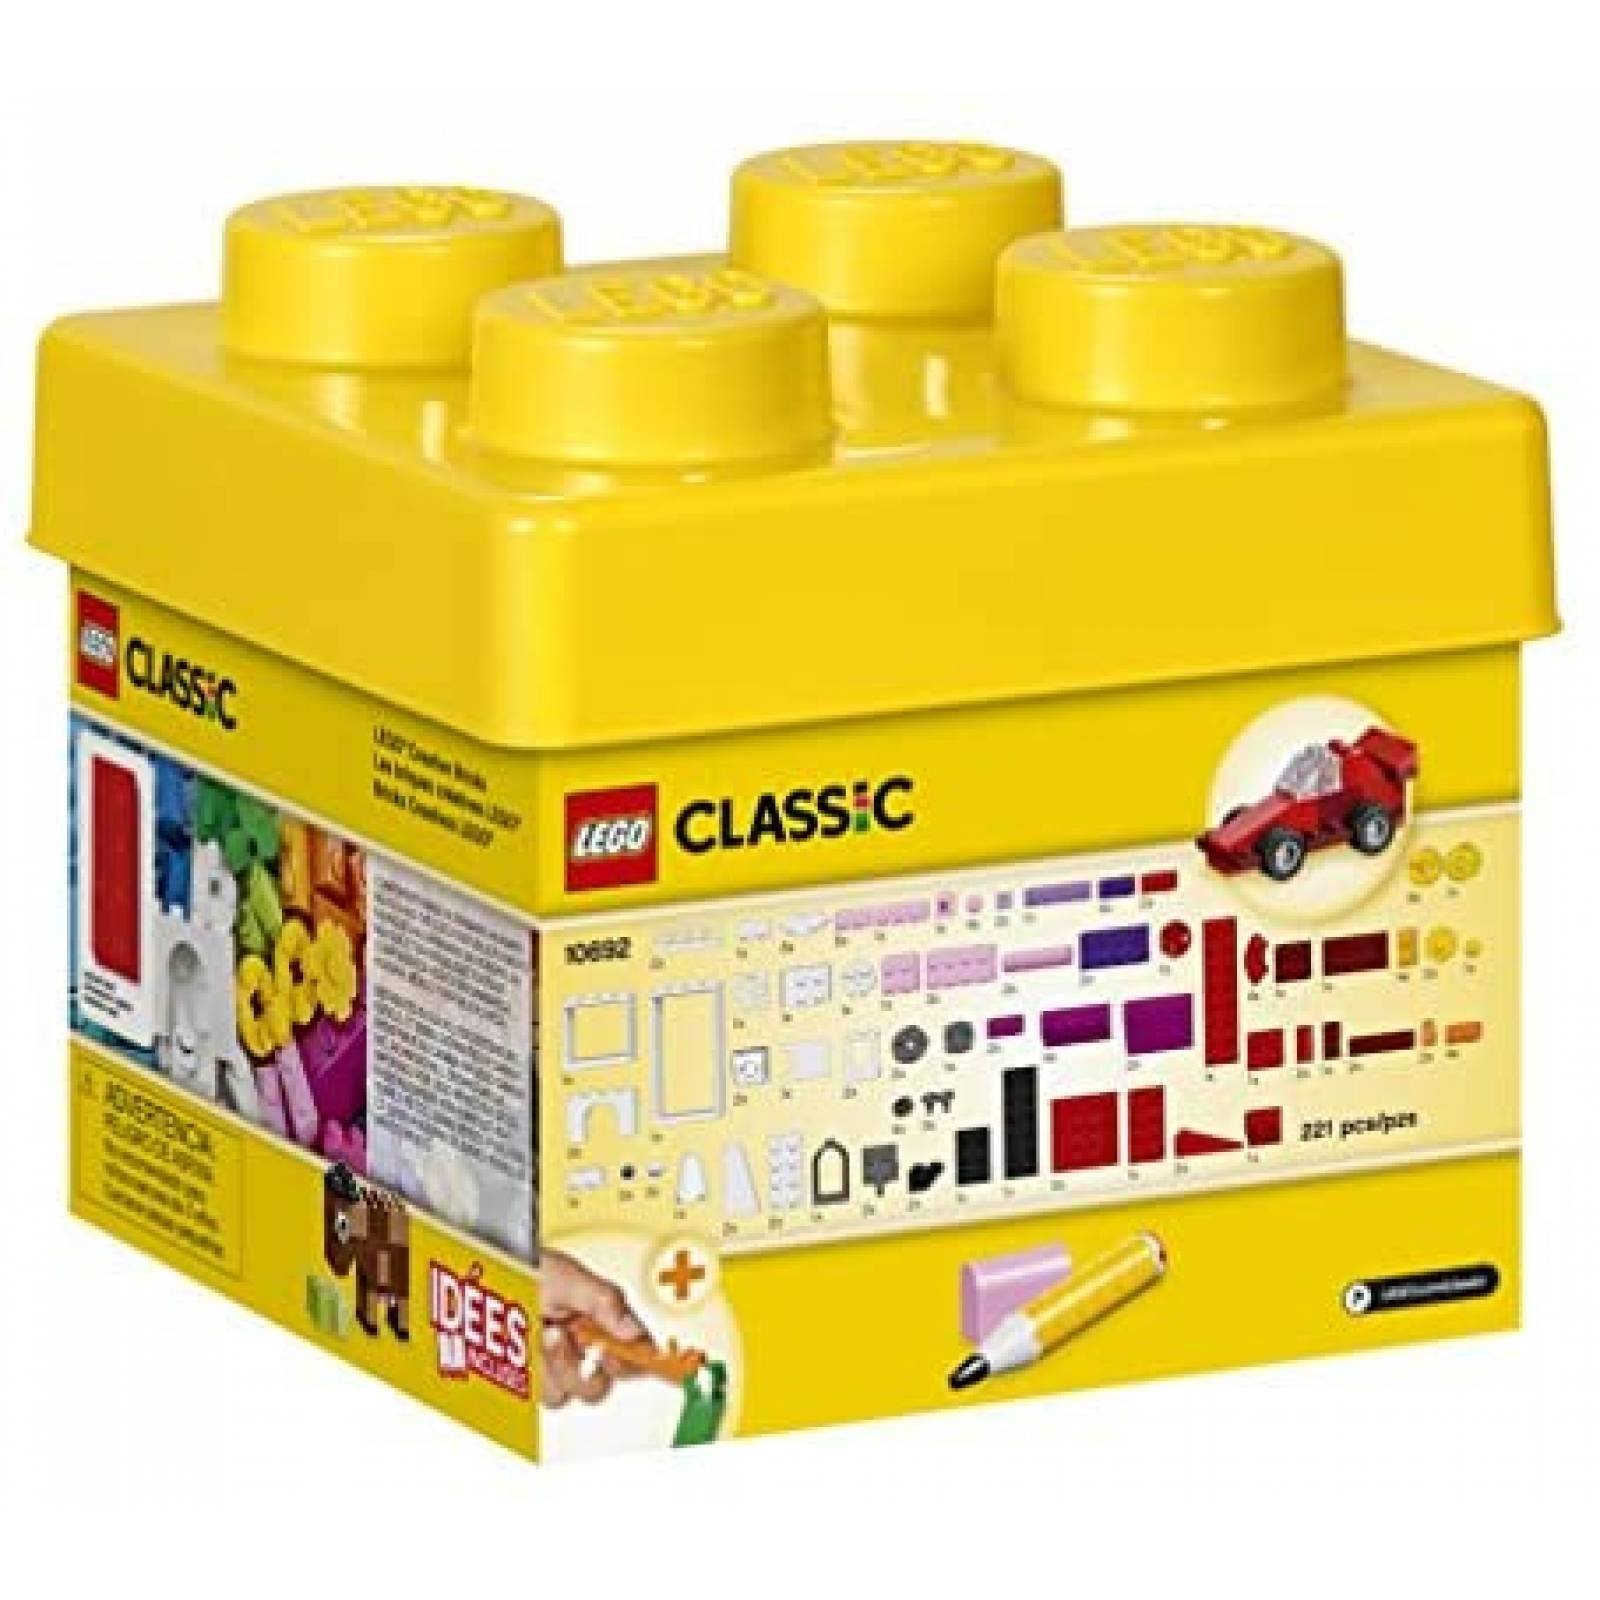 Juguete Armable LEGO 221 Piezas de 29 Colores para Niños